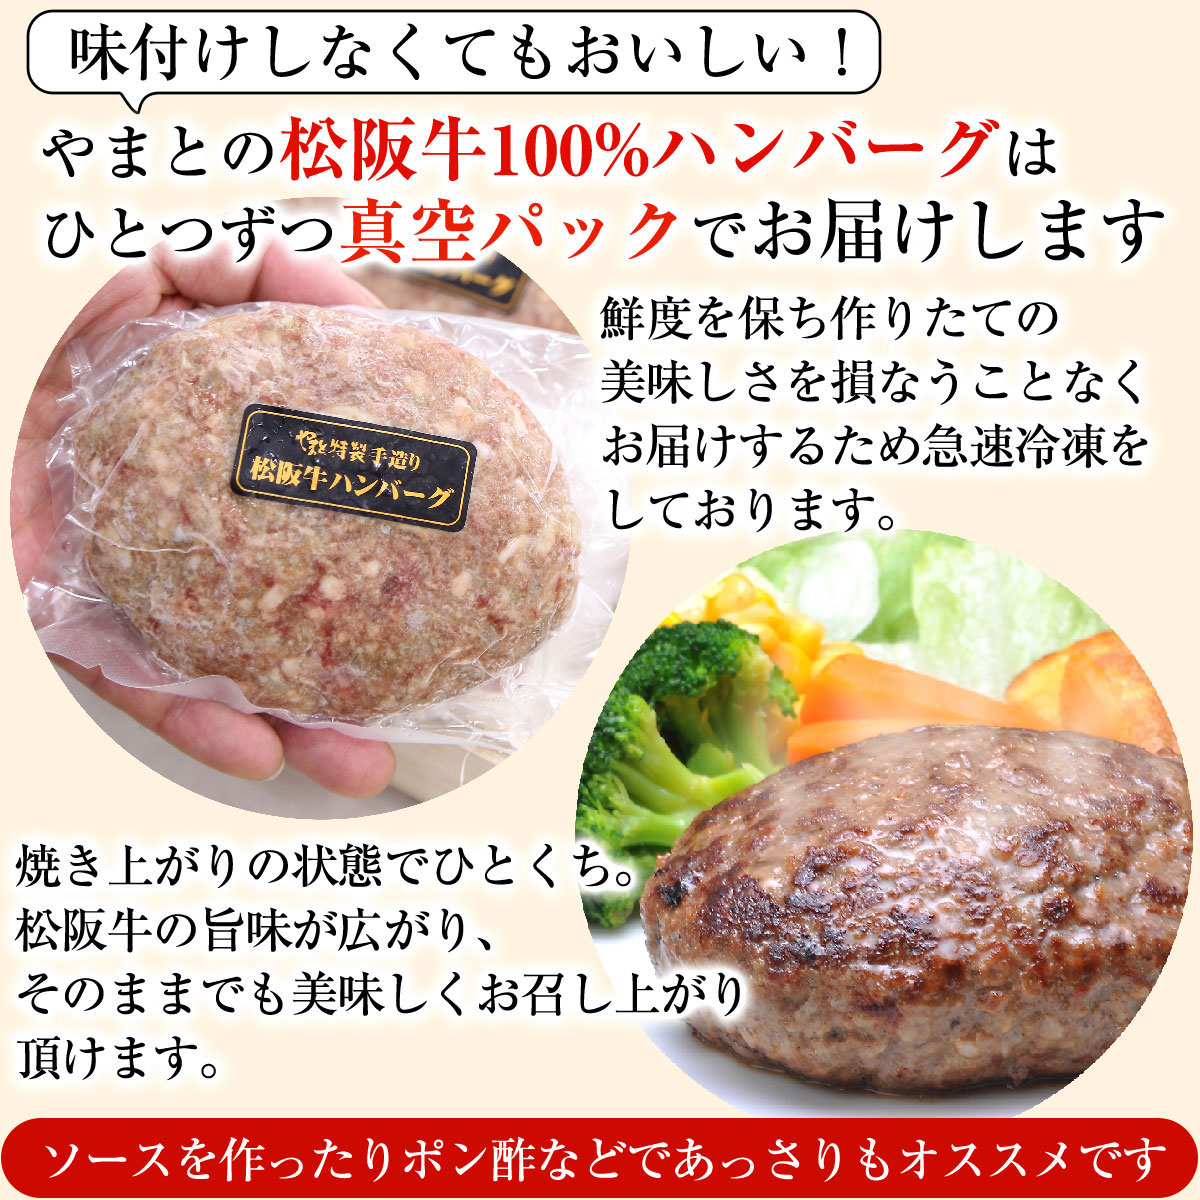 松阪牛ハンバーグ6個セット